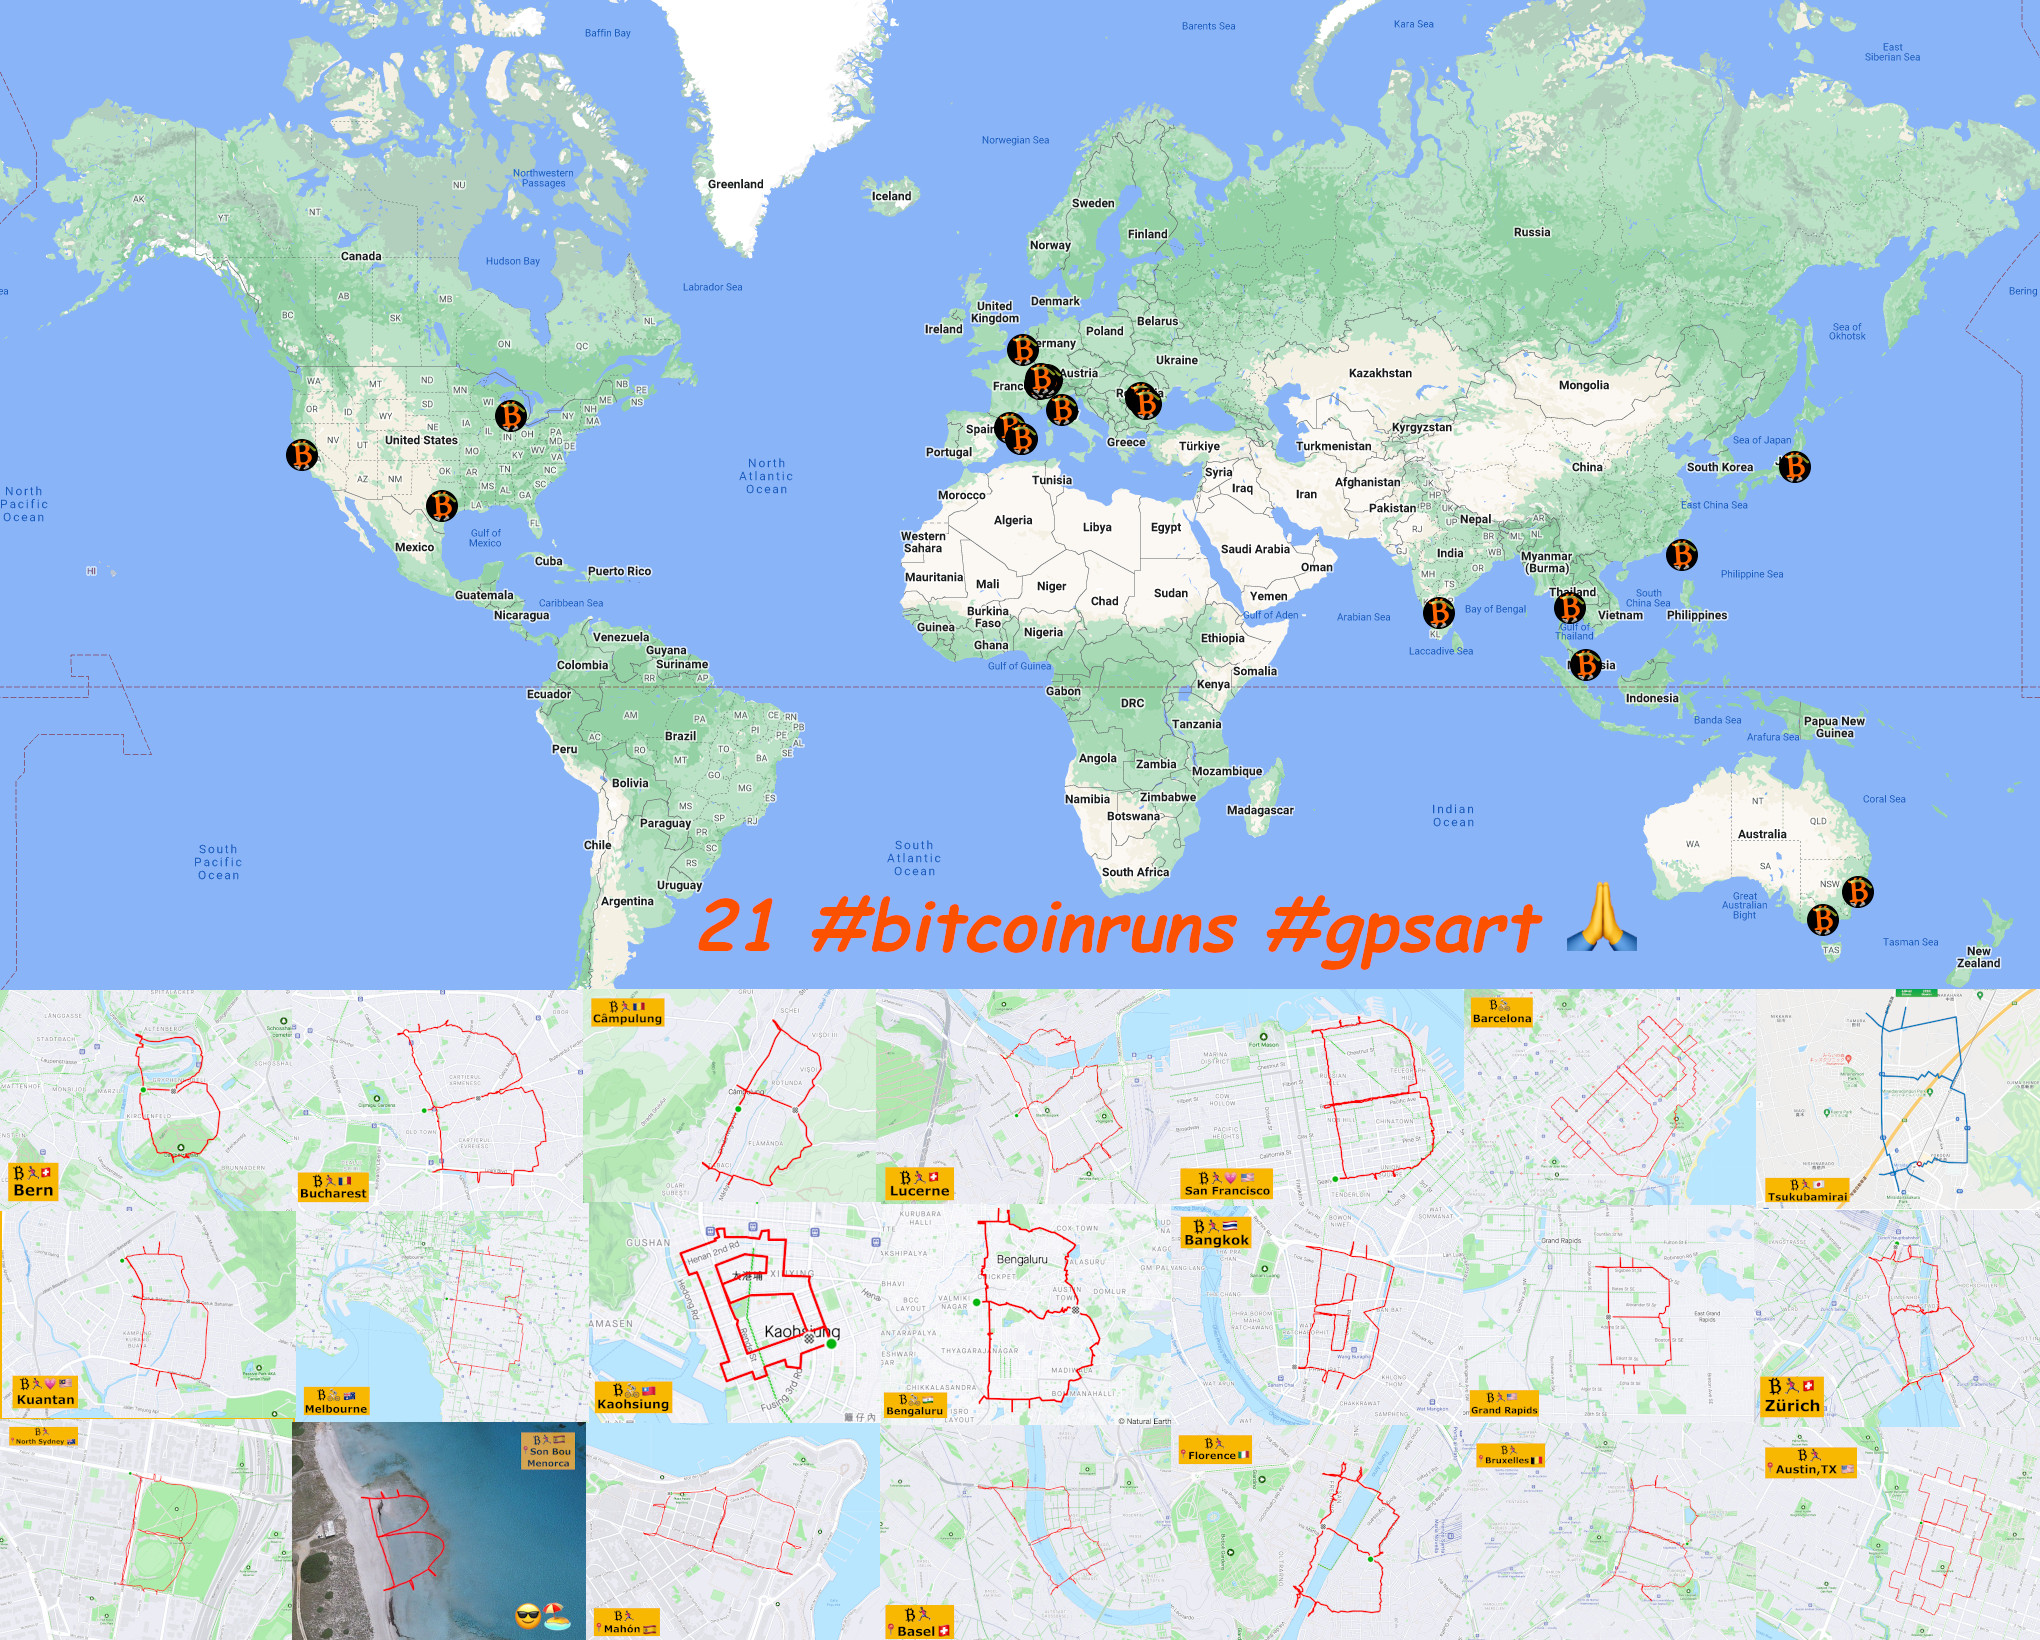 21 #bitcoinruns #gpsart on world map